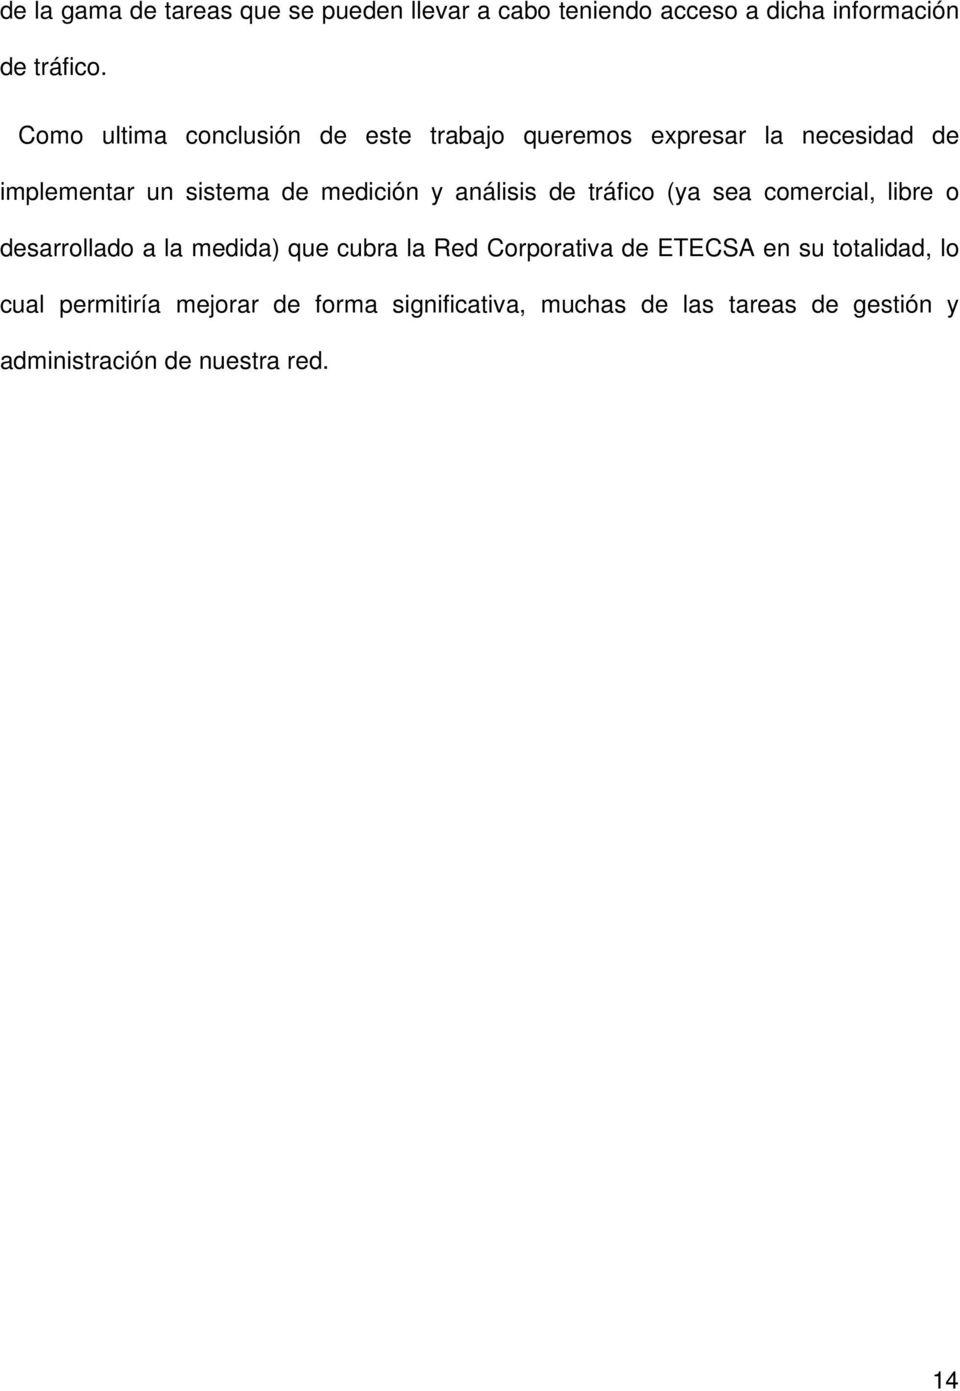 análisis de tráfico (ya sea comercial, libre o desarrollado a la medida) que cubra la Red Corporativa de ETECSA